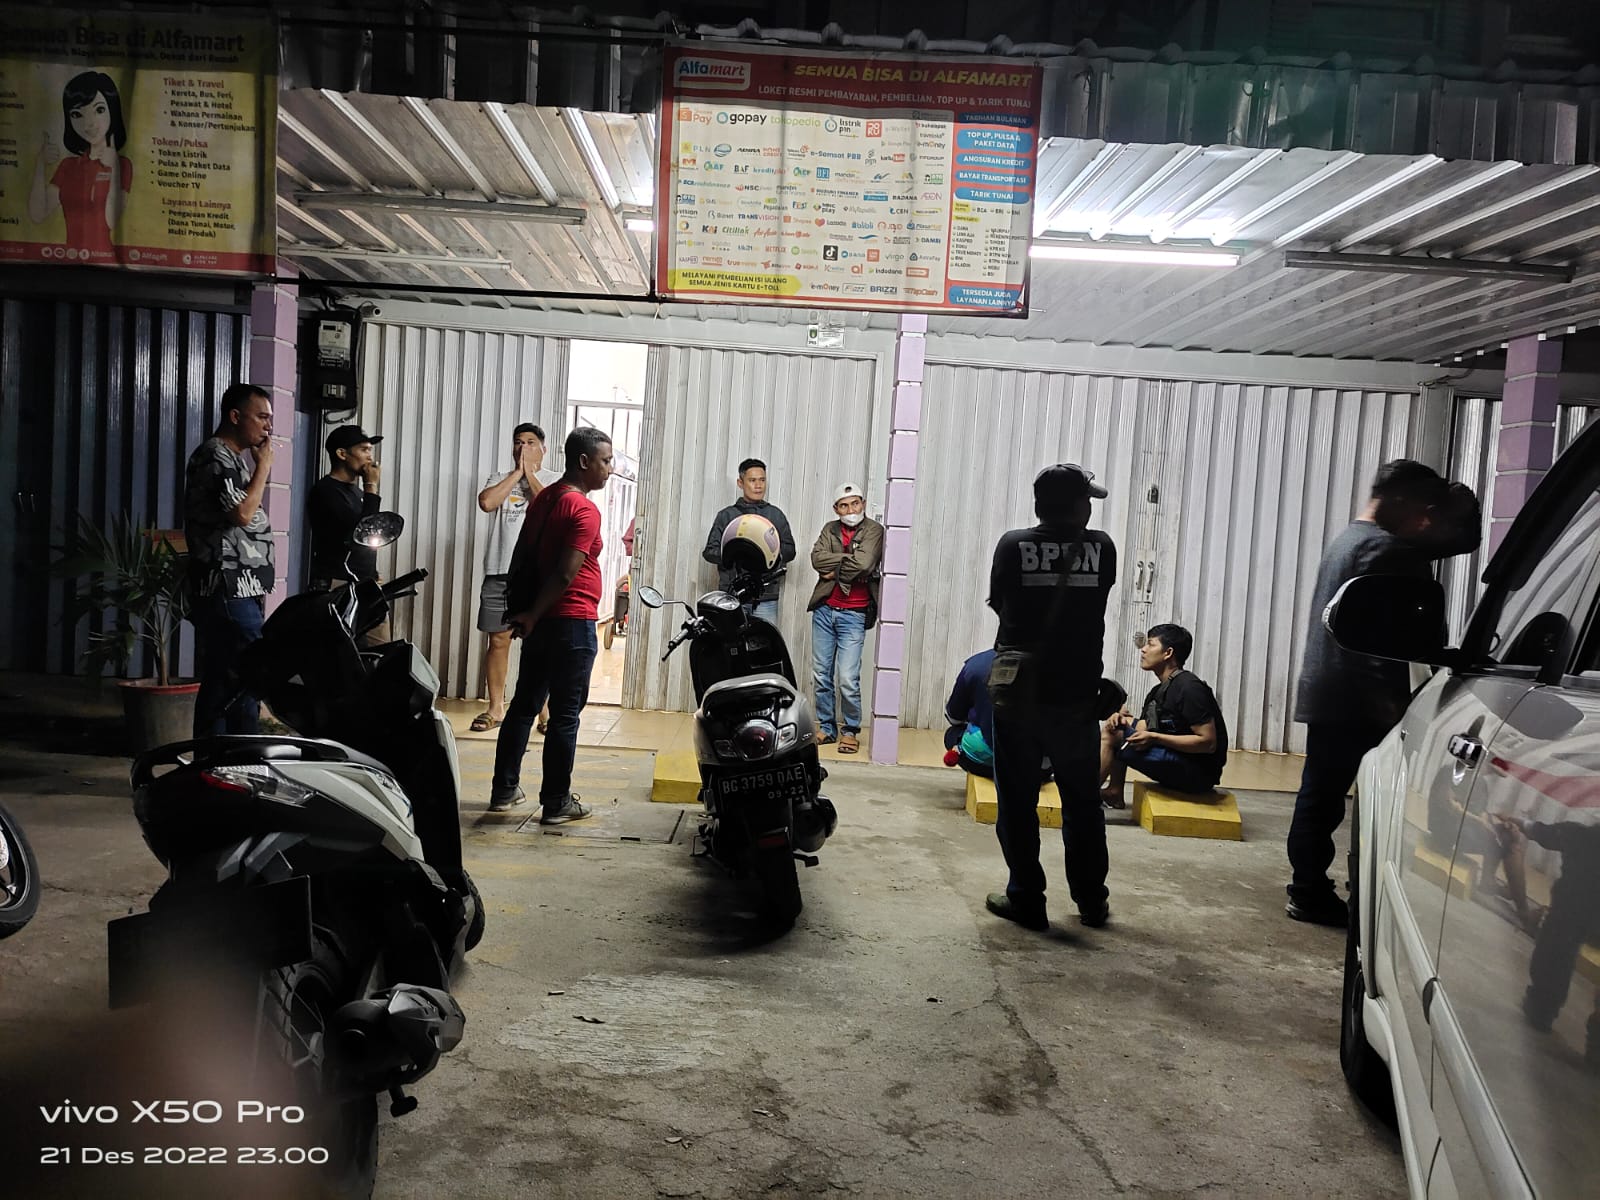 Minimarket di Prabumulih Dirampok, Pelaku Bawa Samurai dan Todongkan Senjata Api ke Karyawan 